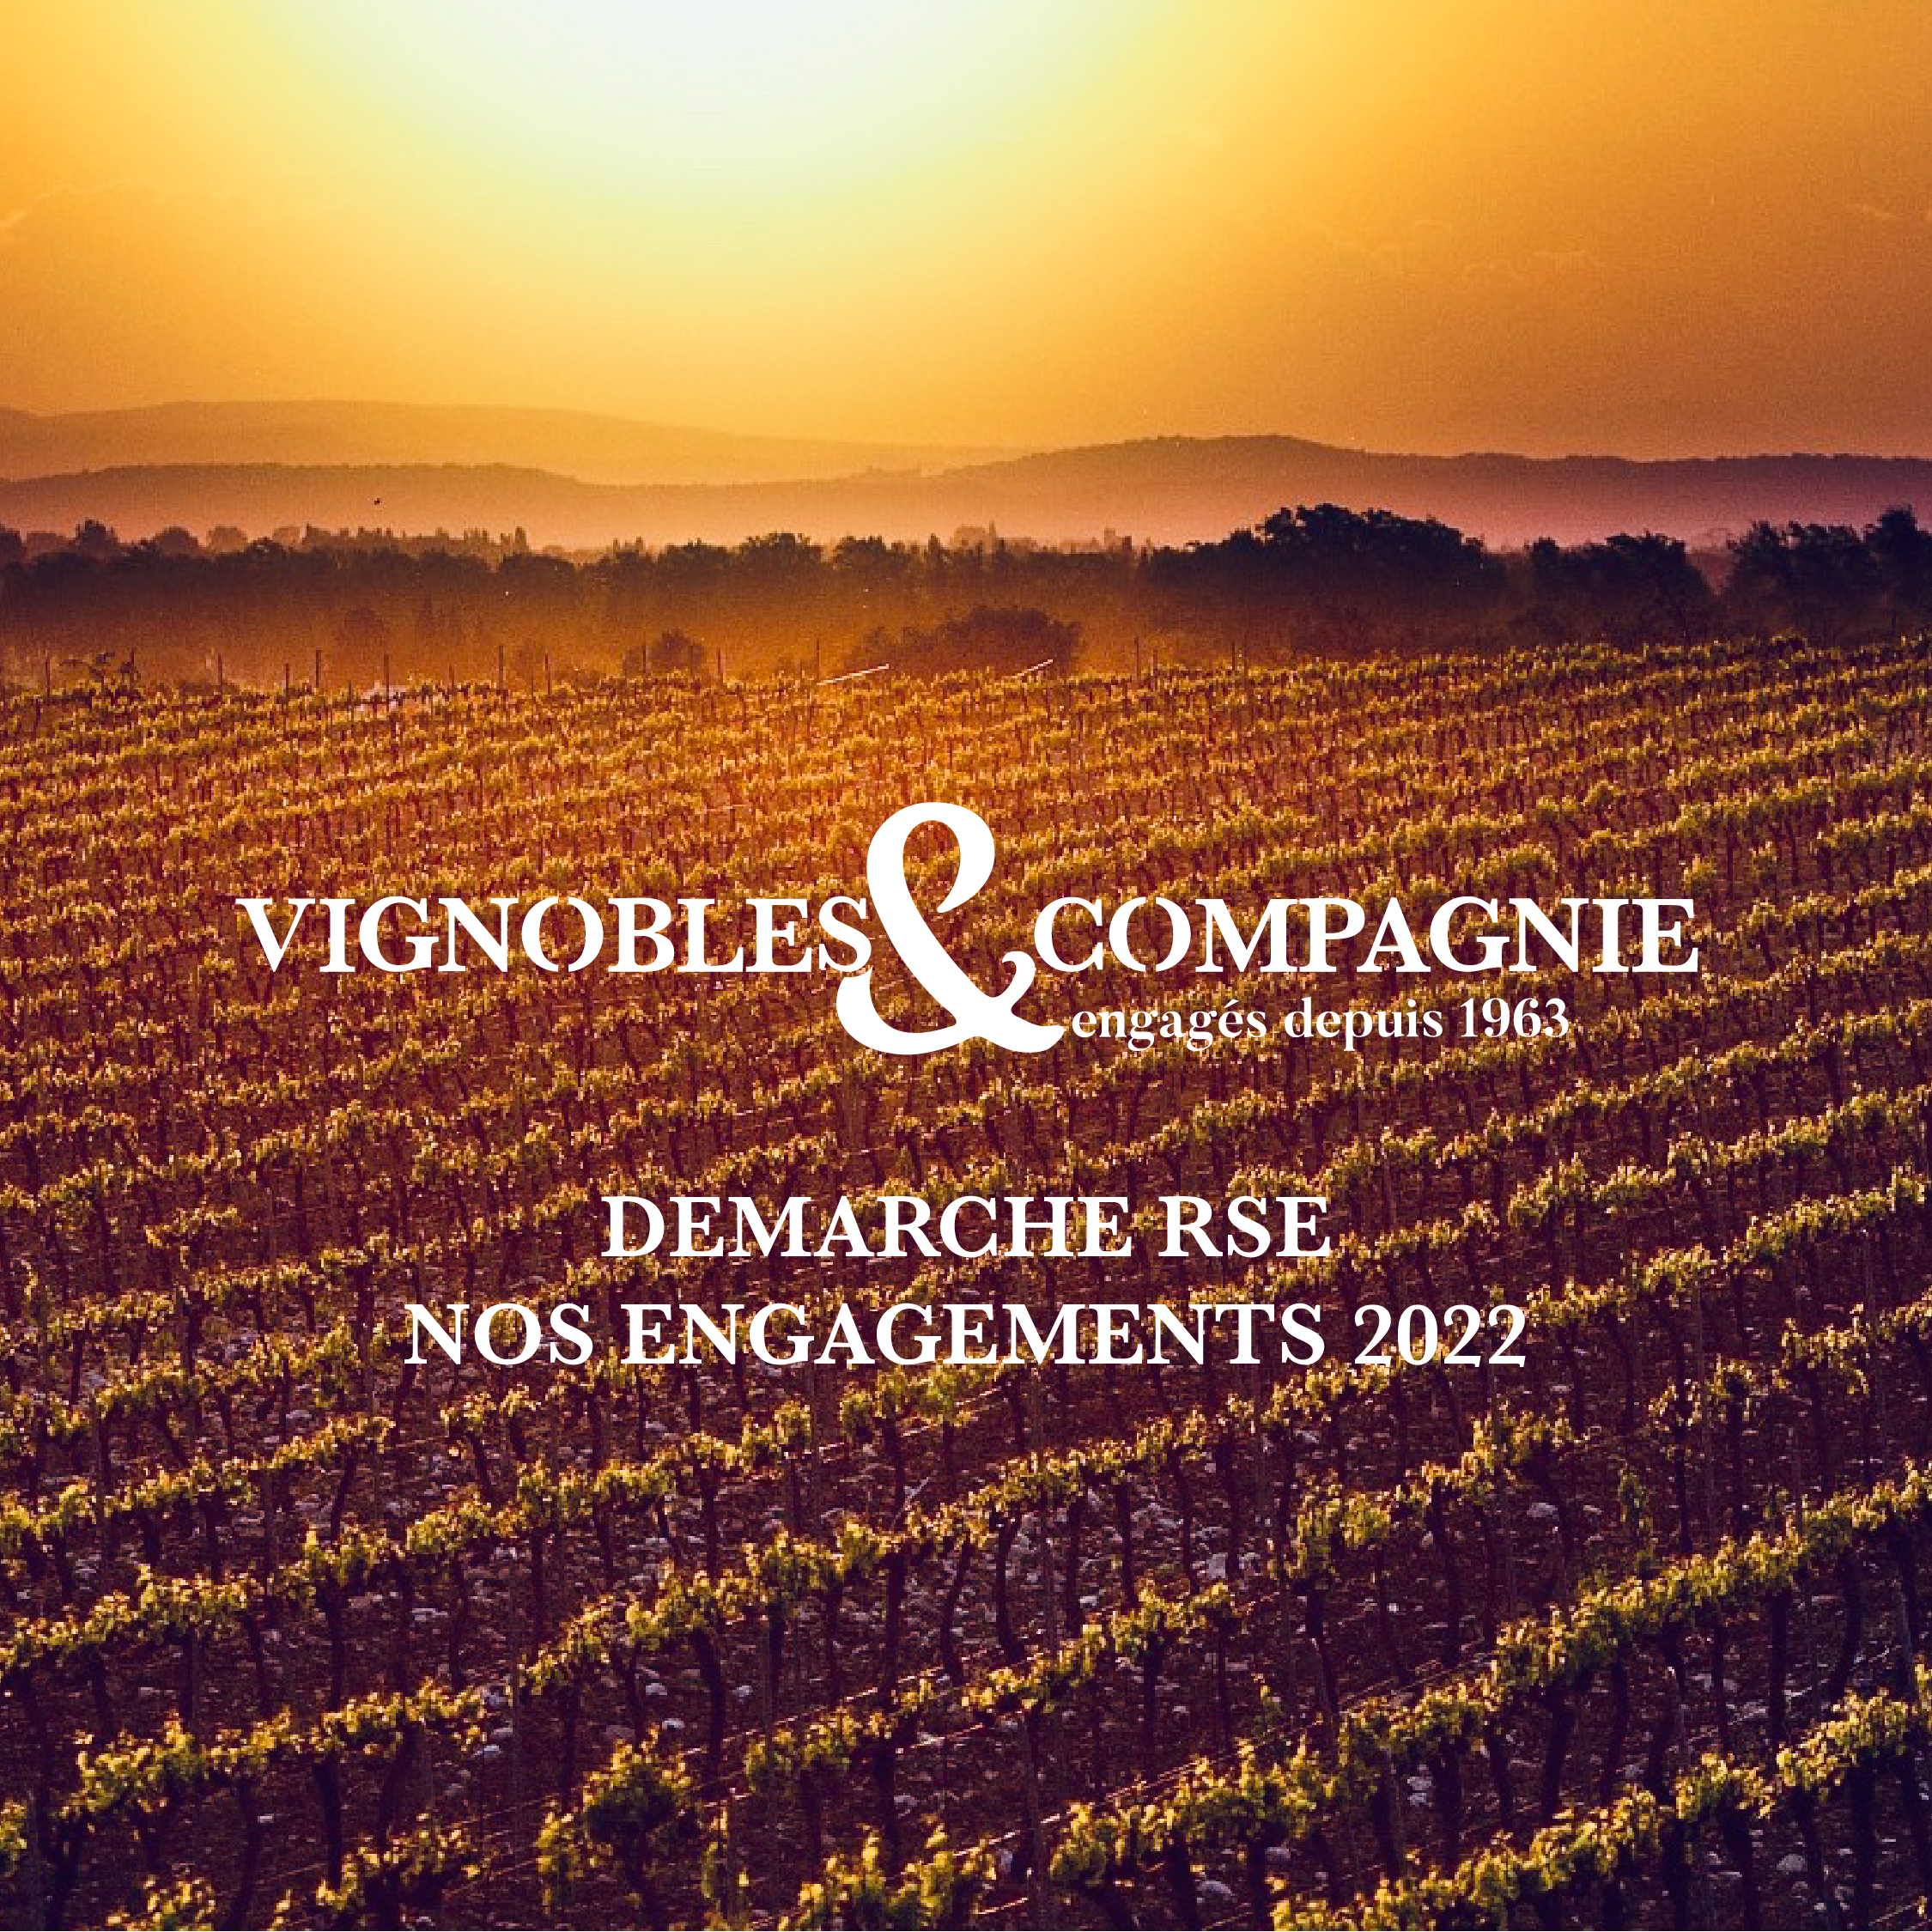 Image de couverture - Démarche RSE de Vignobles & Compagnie